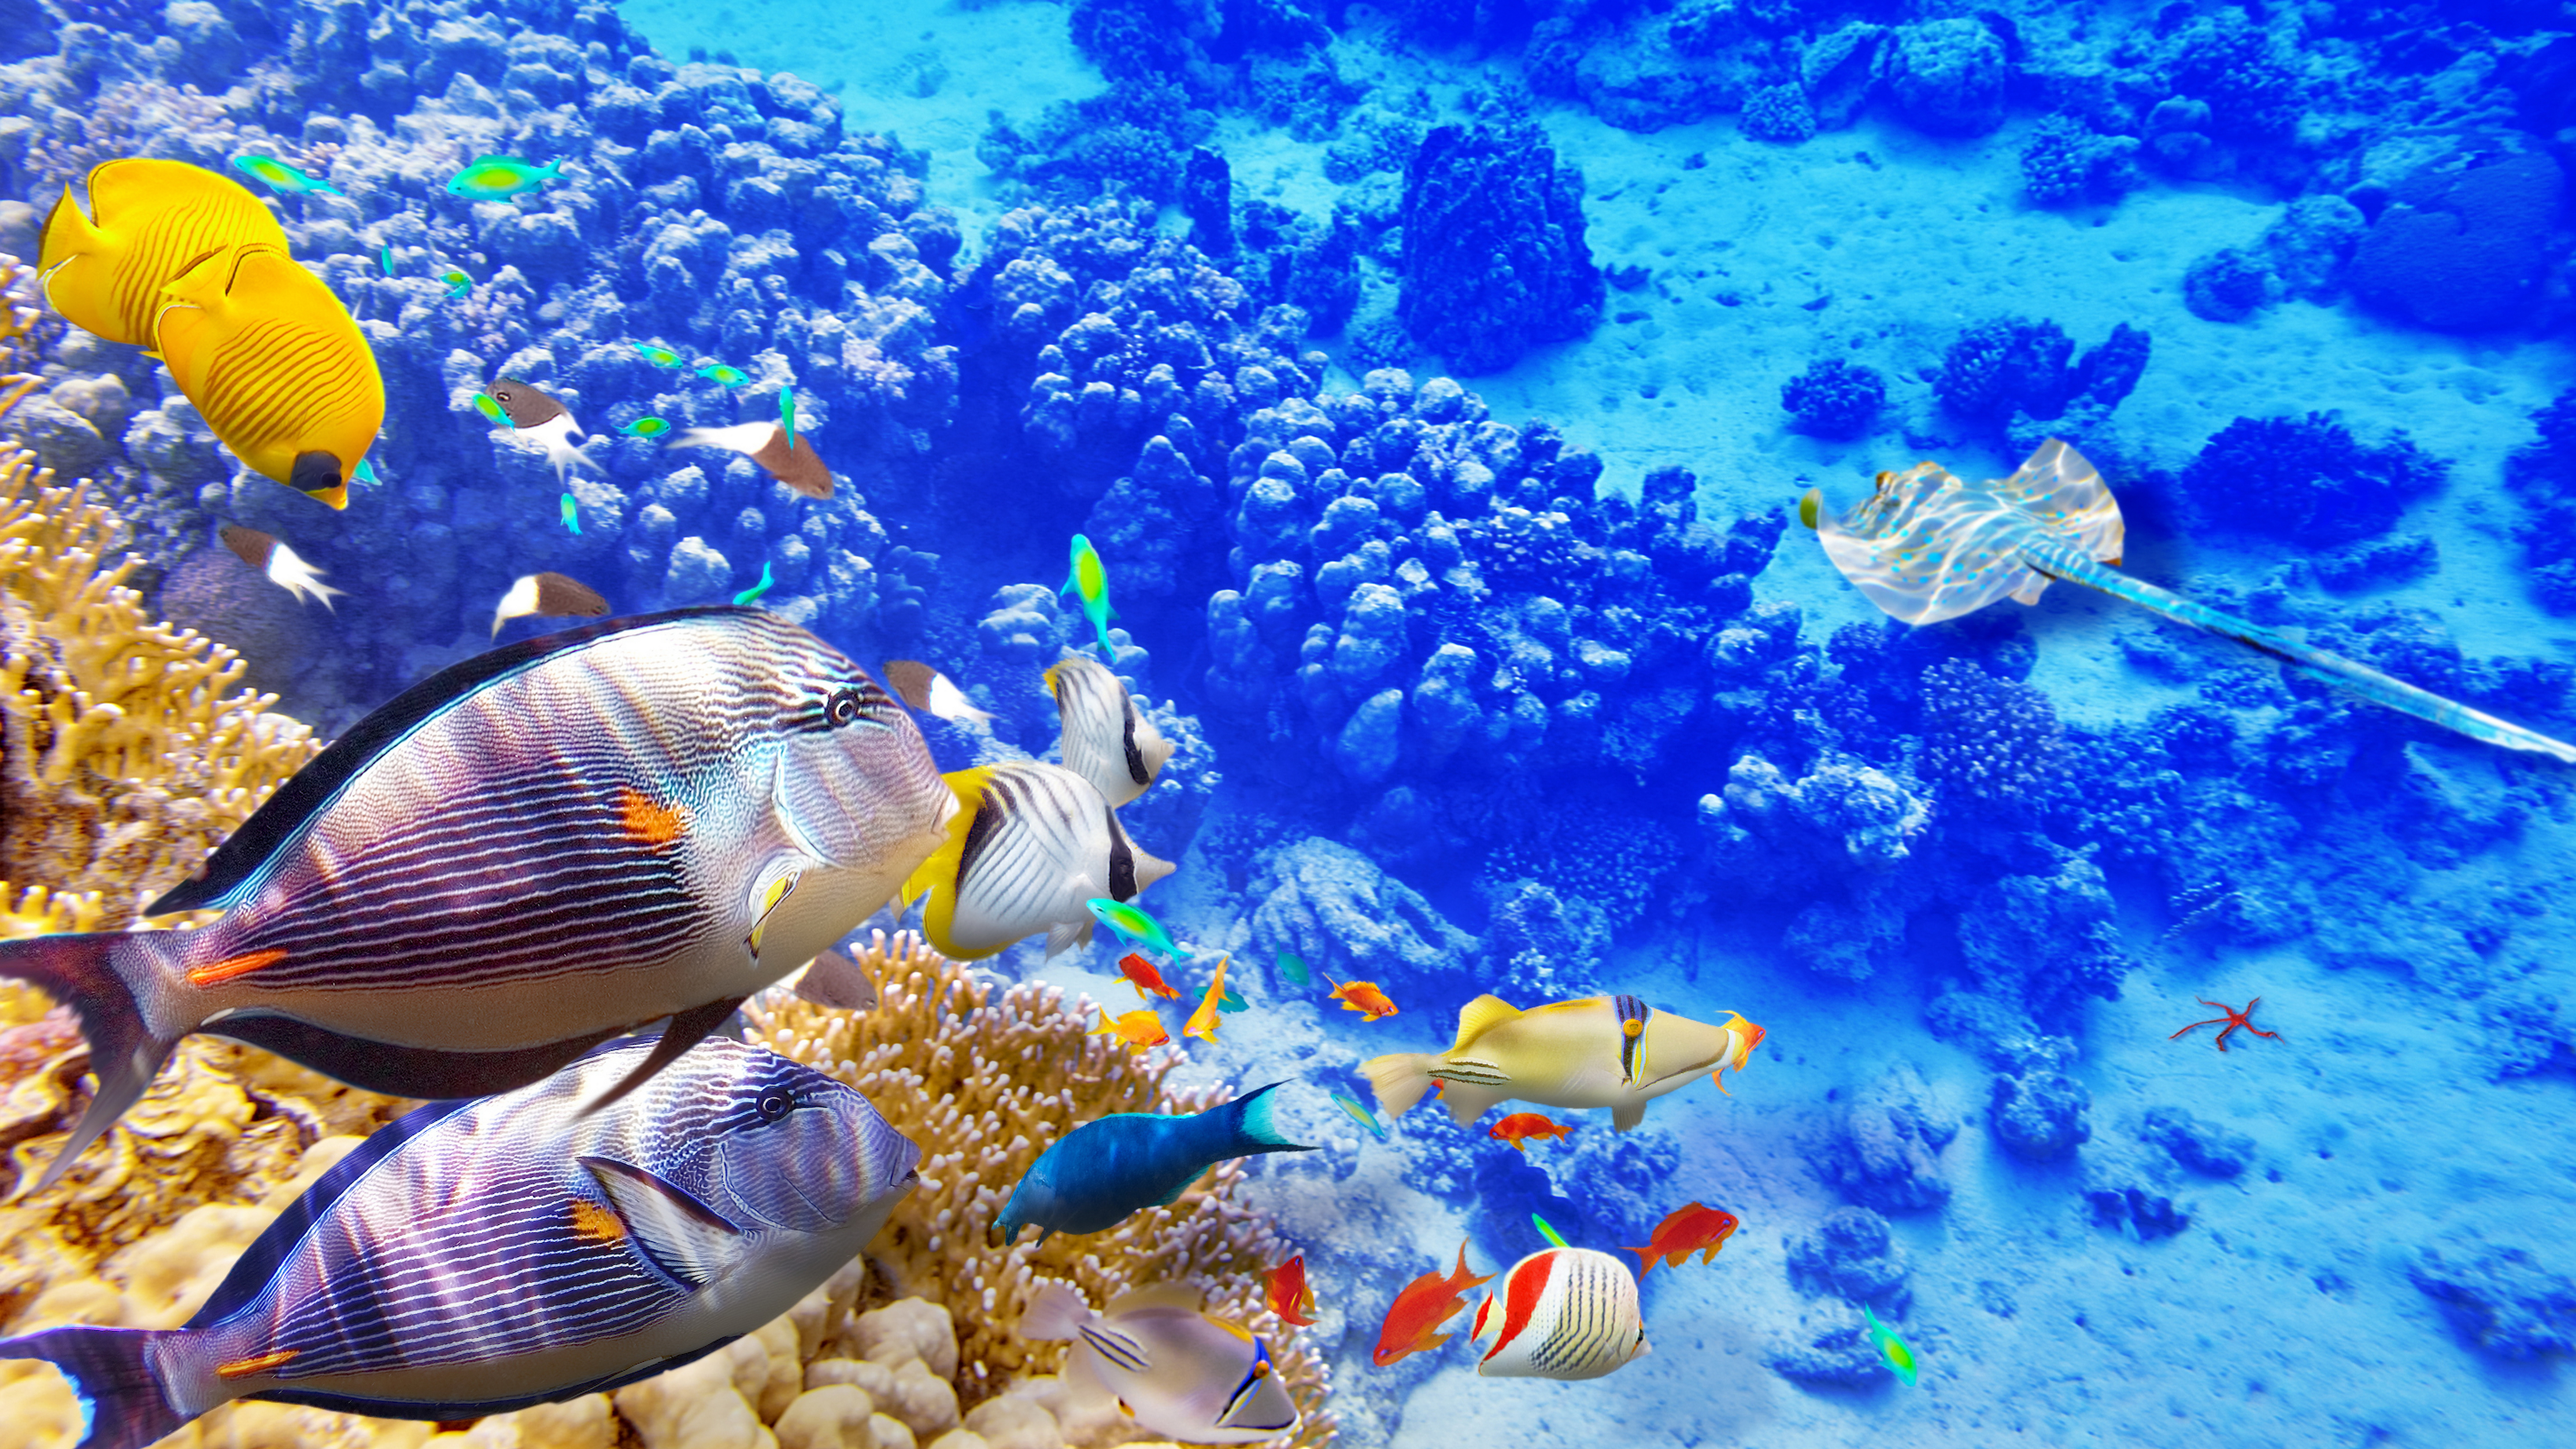 8K壁紙，海底世界，珊瑚，魚，海洋，辦公室壁紙, Fond d'écran 8K, monde sous-marin, corail, poisson, océan, papier peint pour bureaux